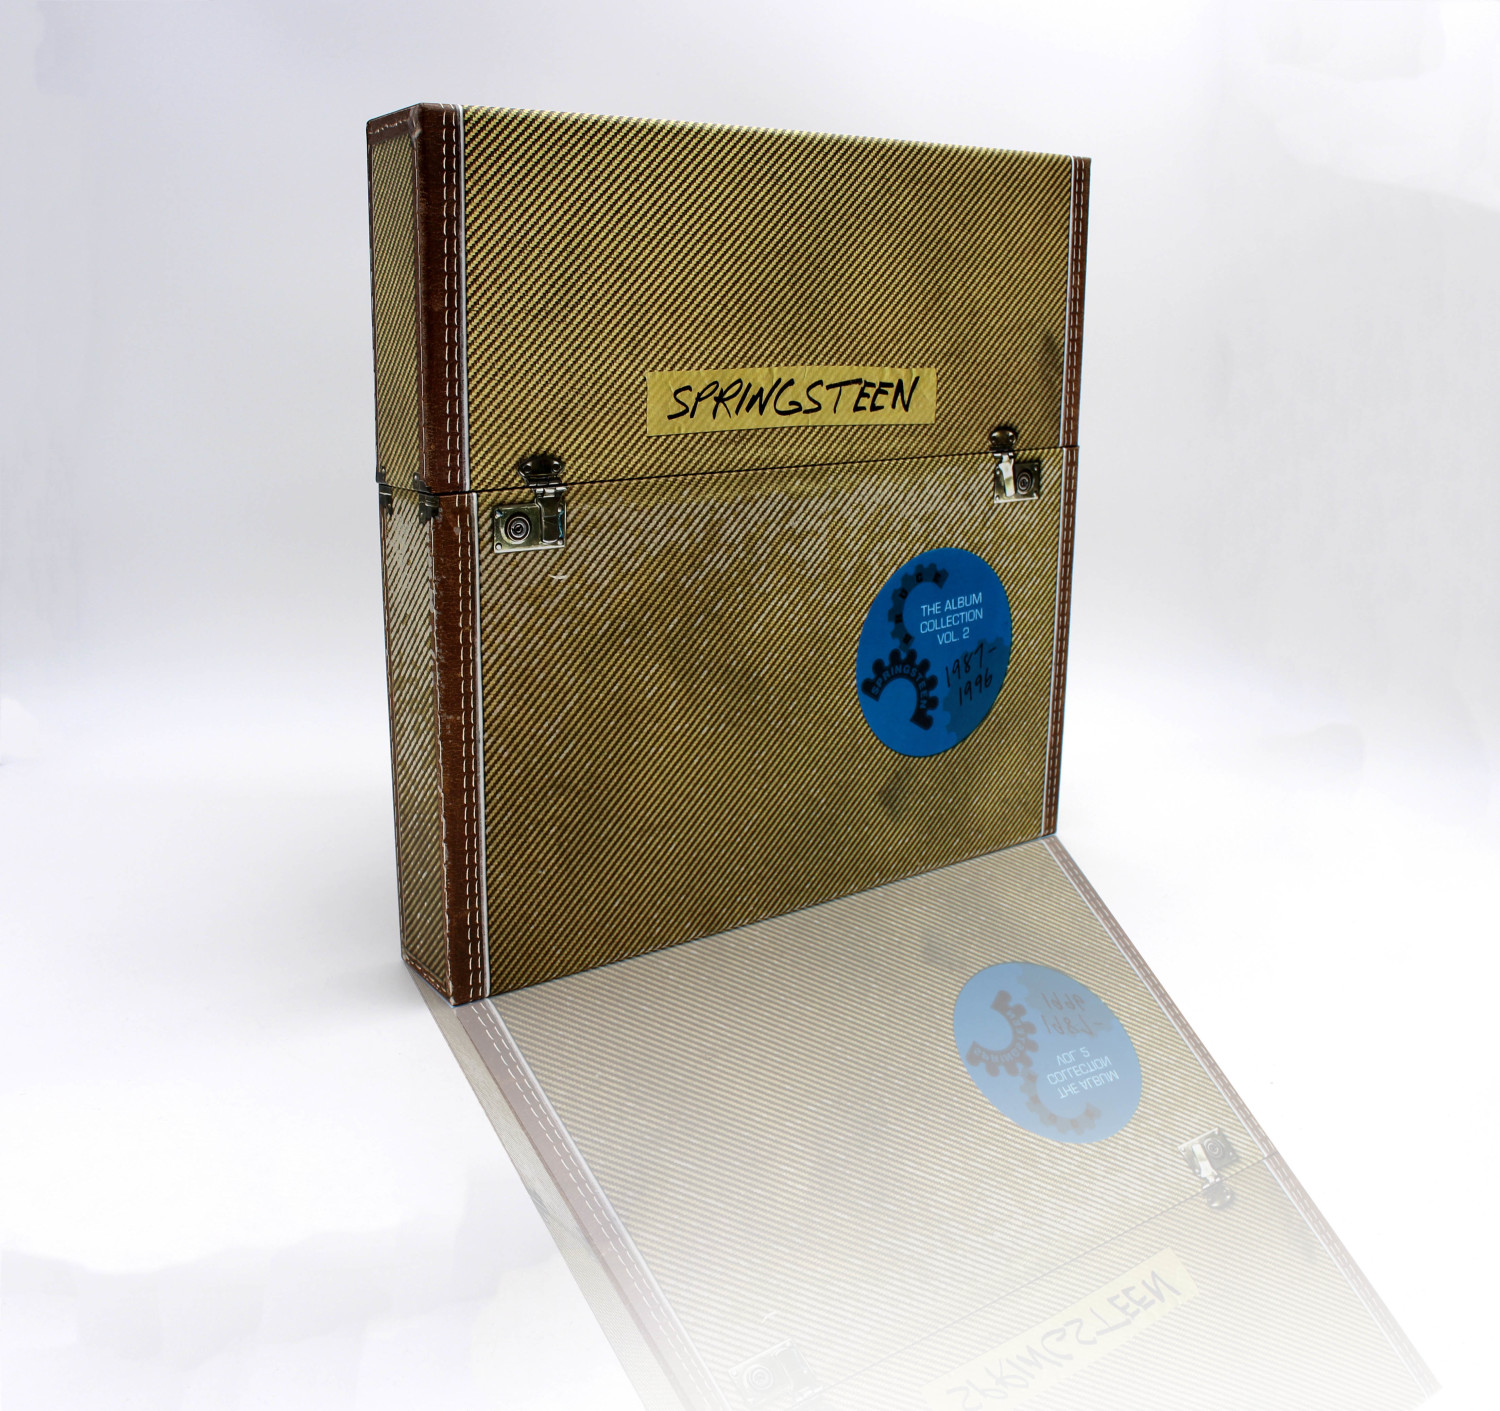 Johnny Hallyday - On Stage (Boxset édition collector) (Vinyl) au meilleur  prix sur